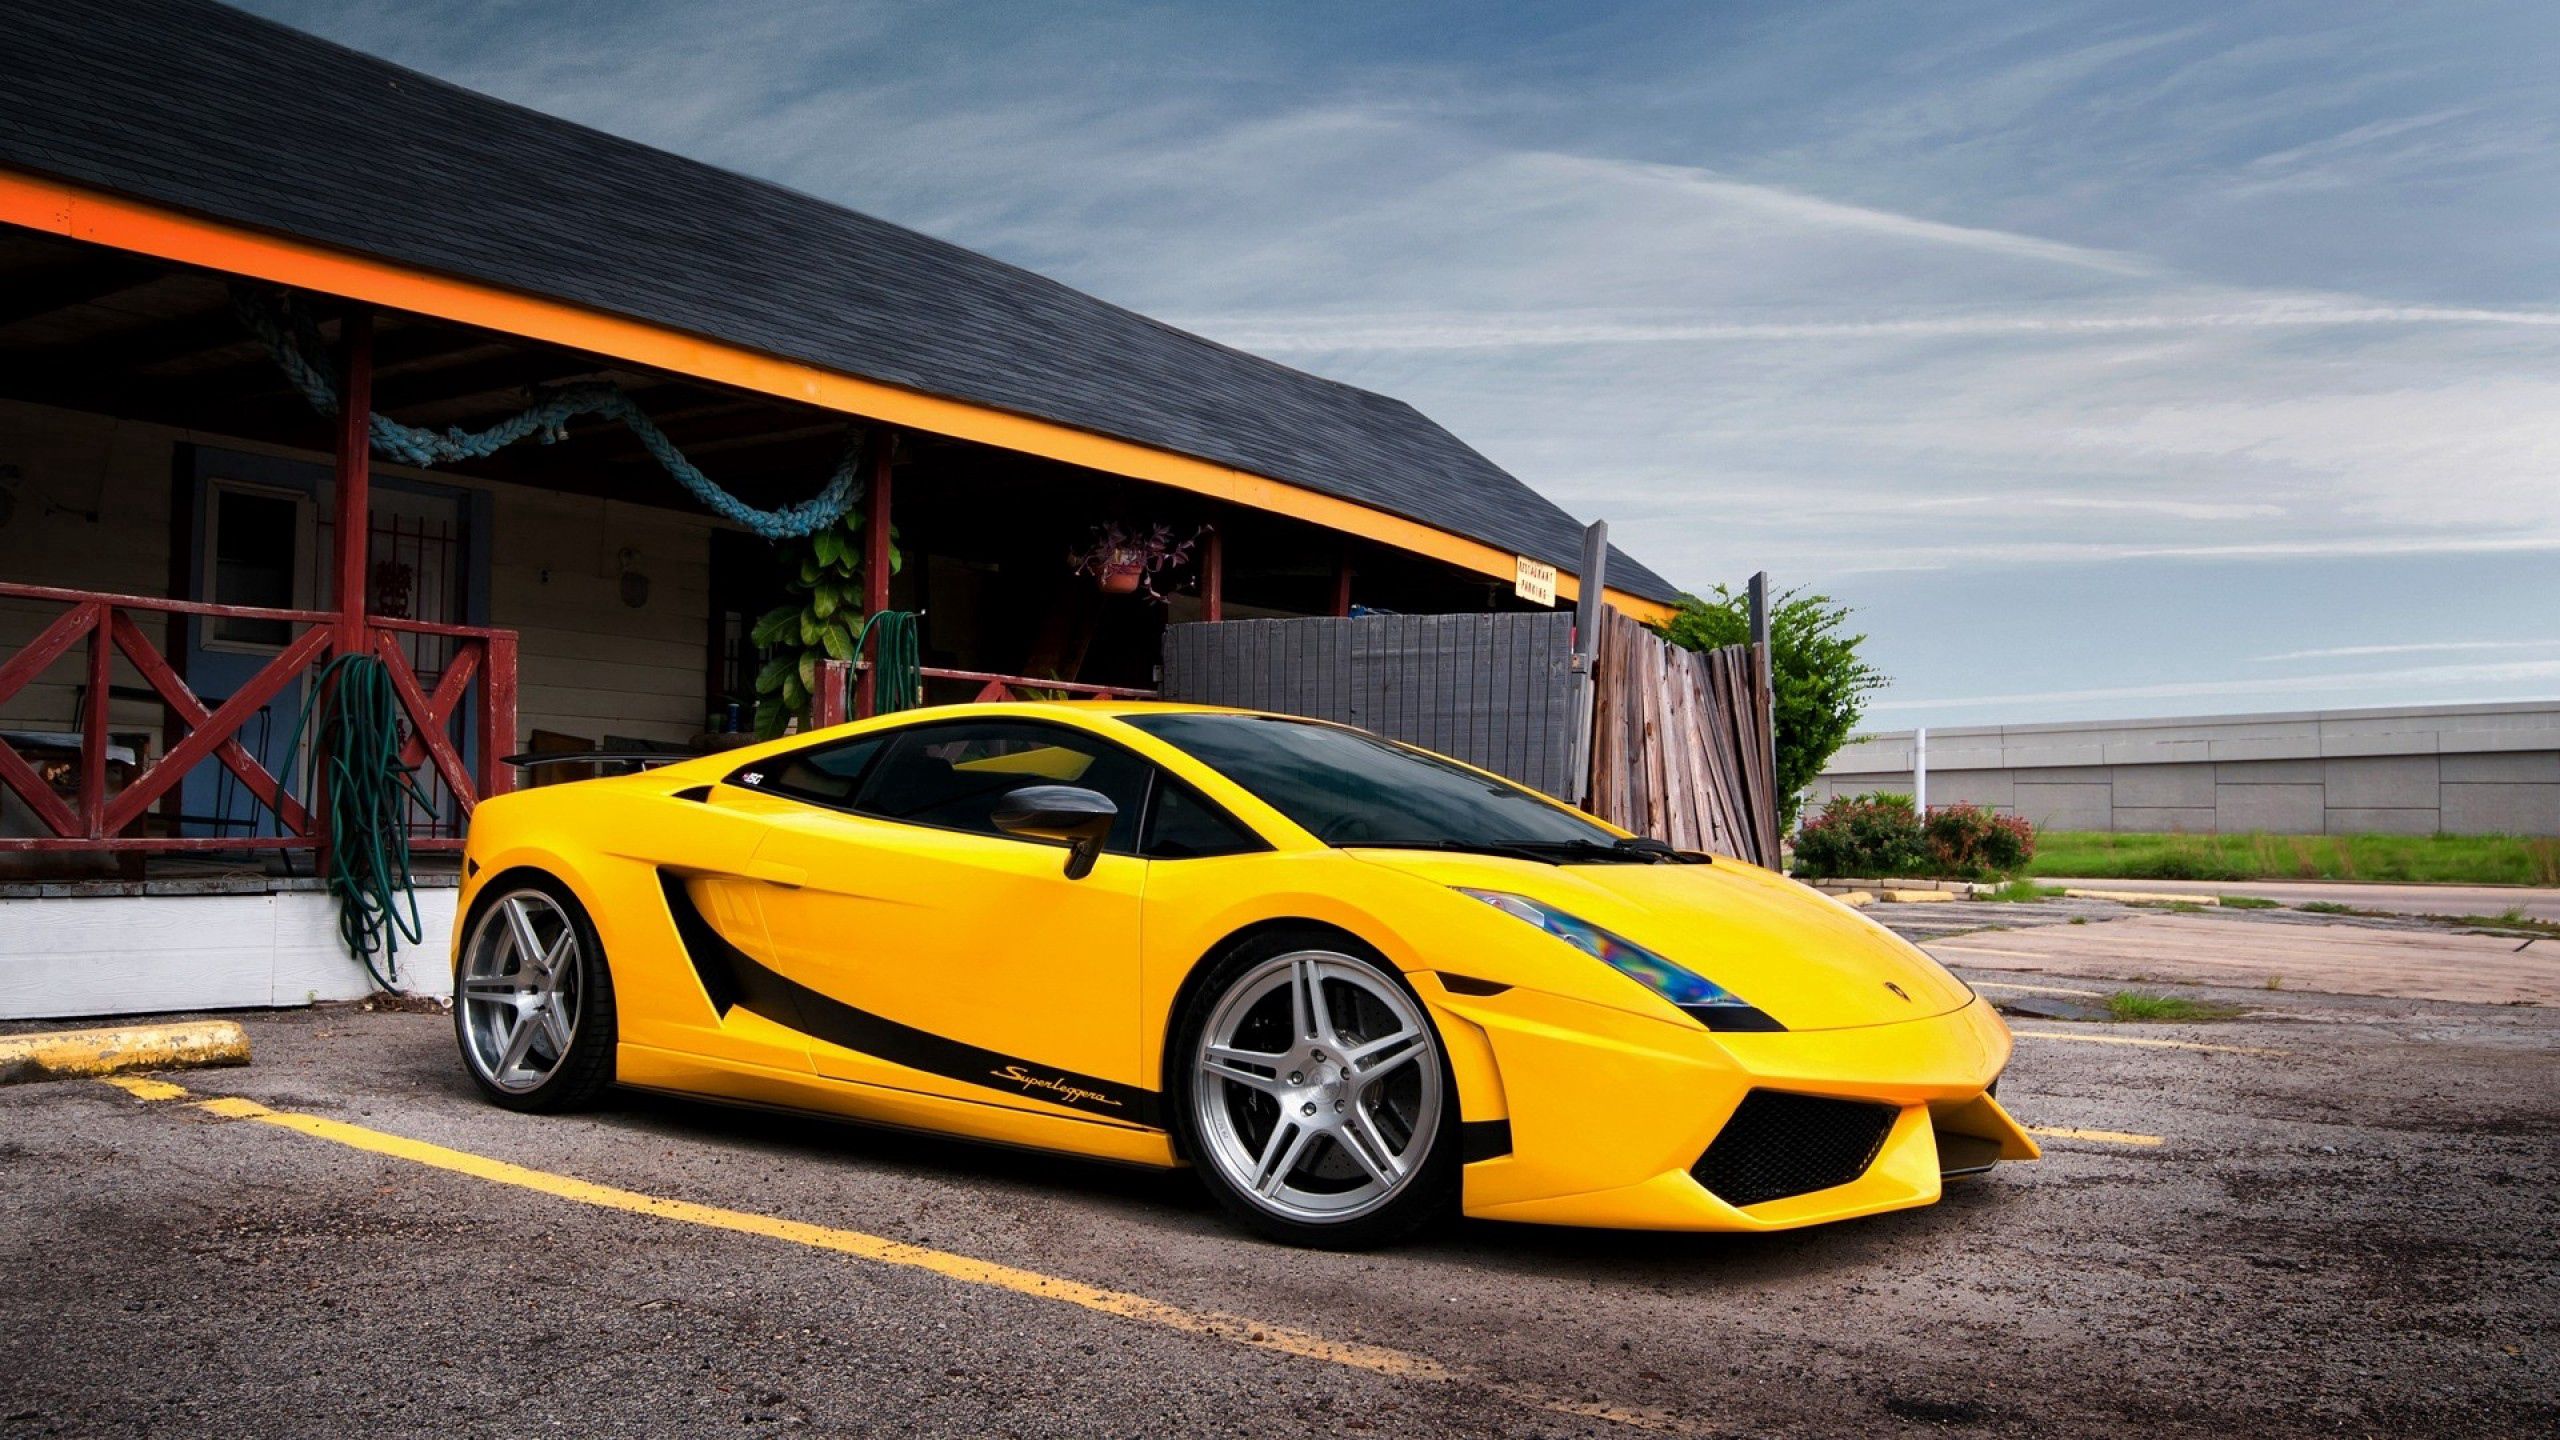 Download mobile wallpaper Gallardo Lp560, Road, Cars, Auto, Lamborghini for free.